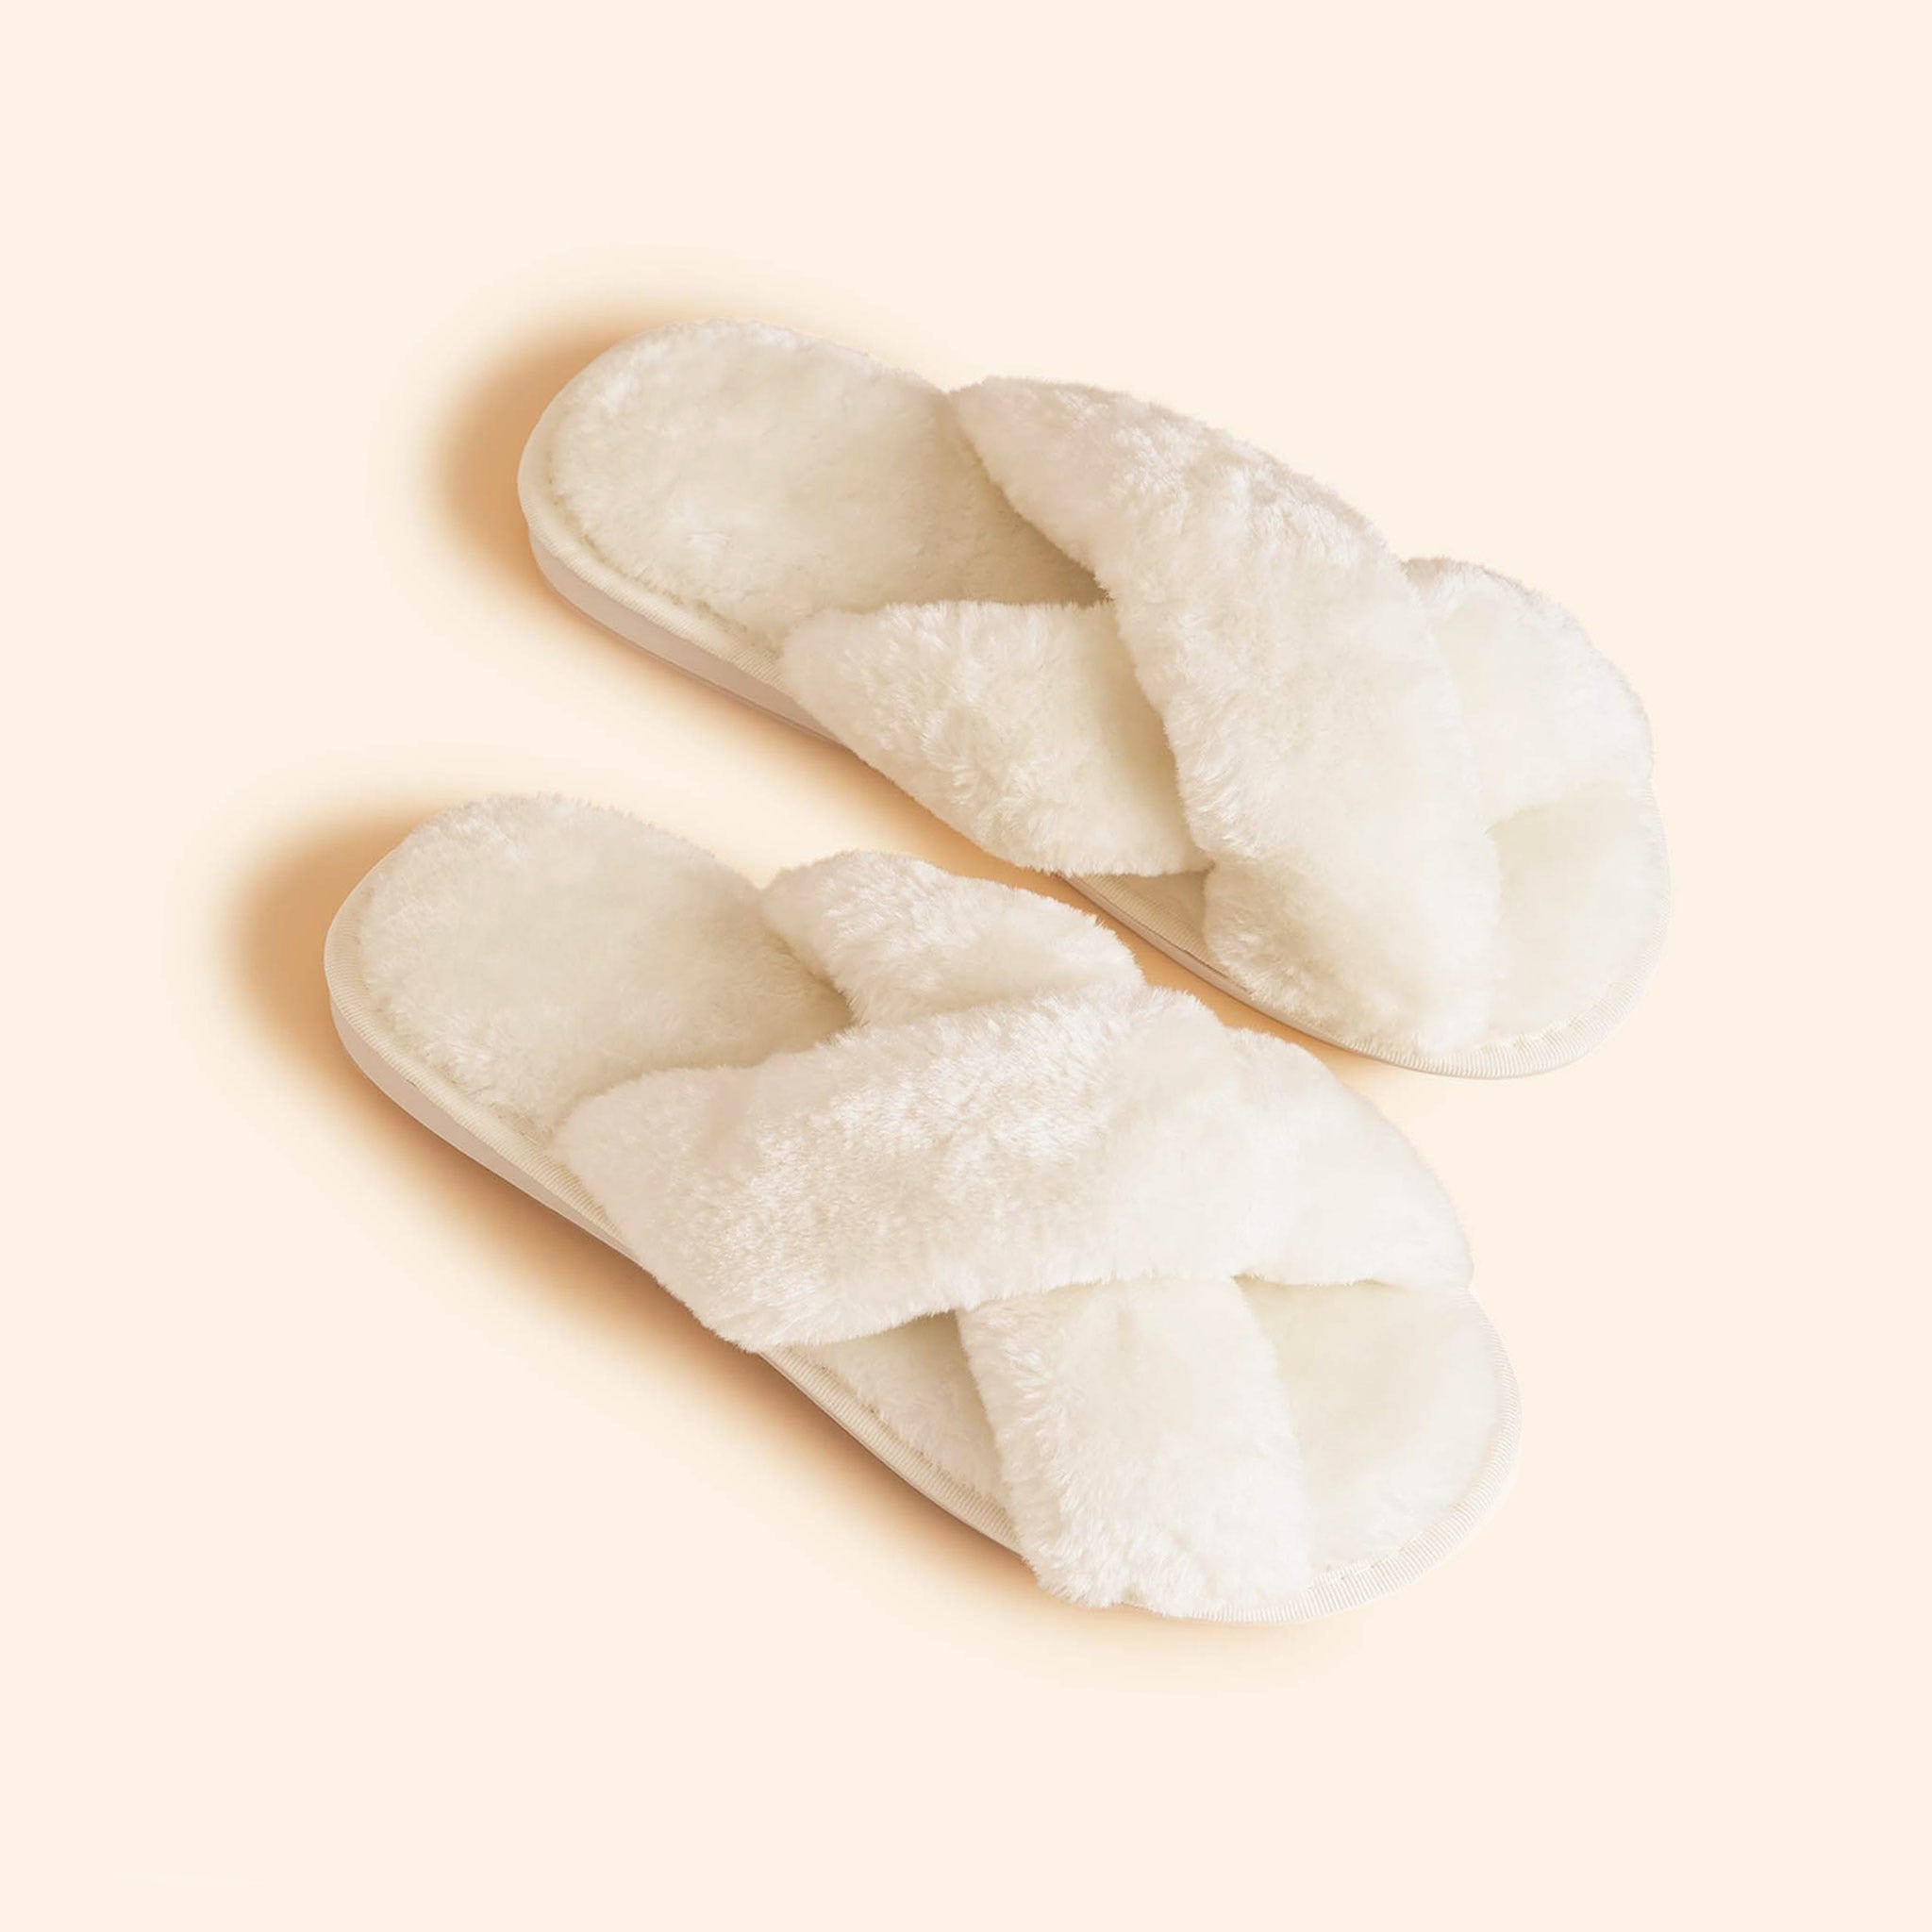 White Fluffy Slippers